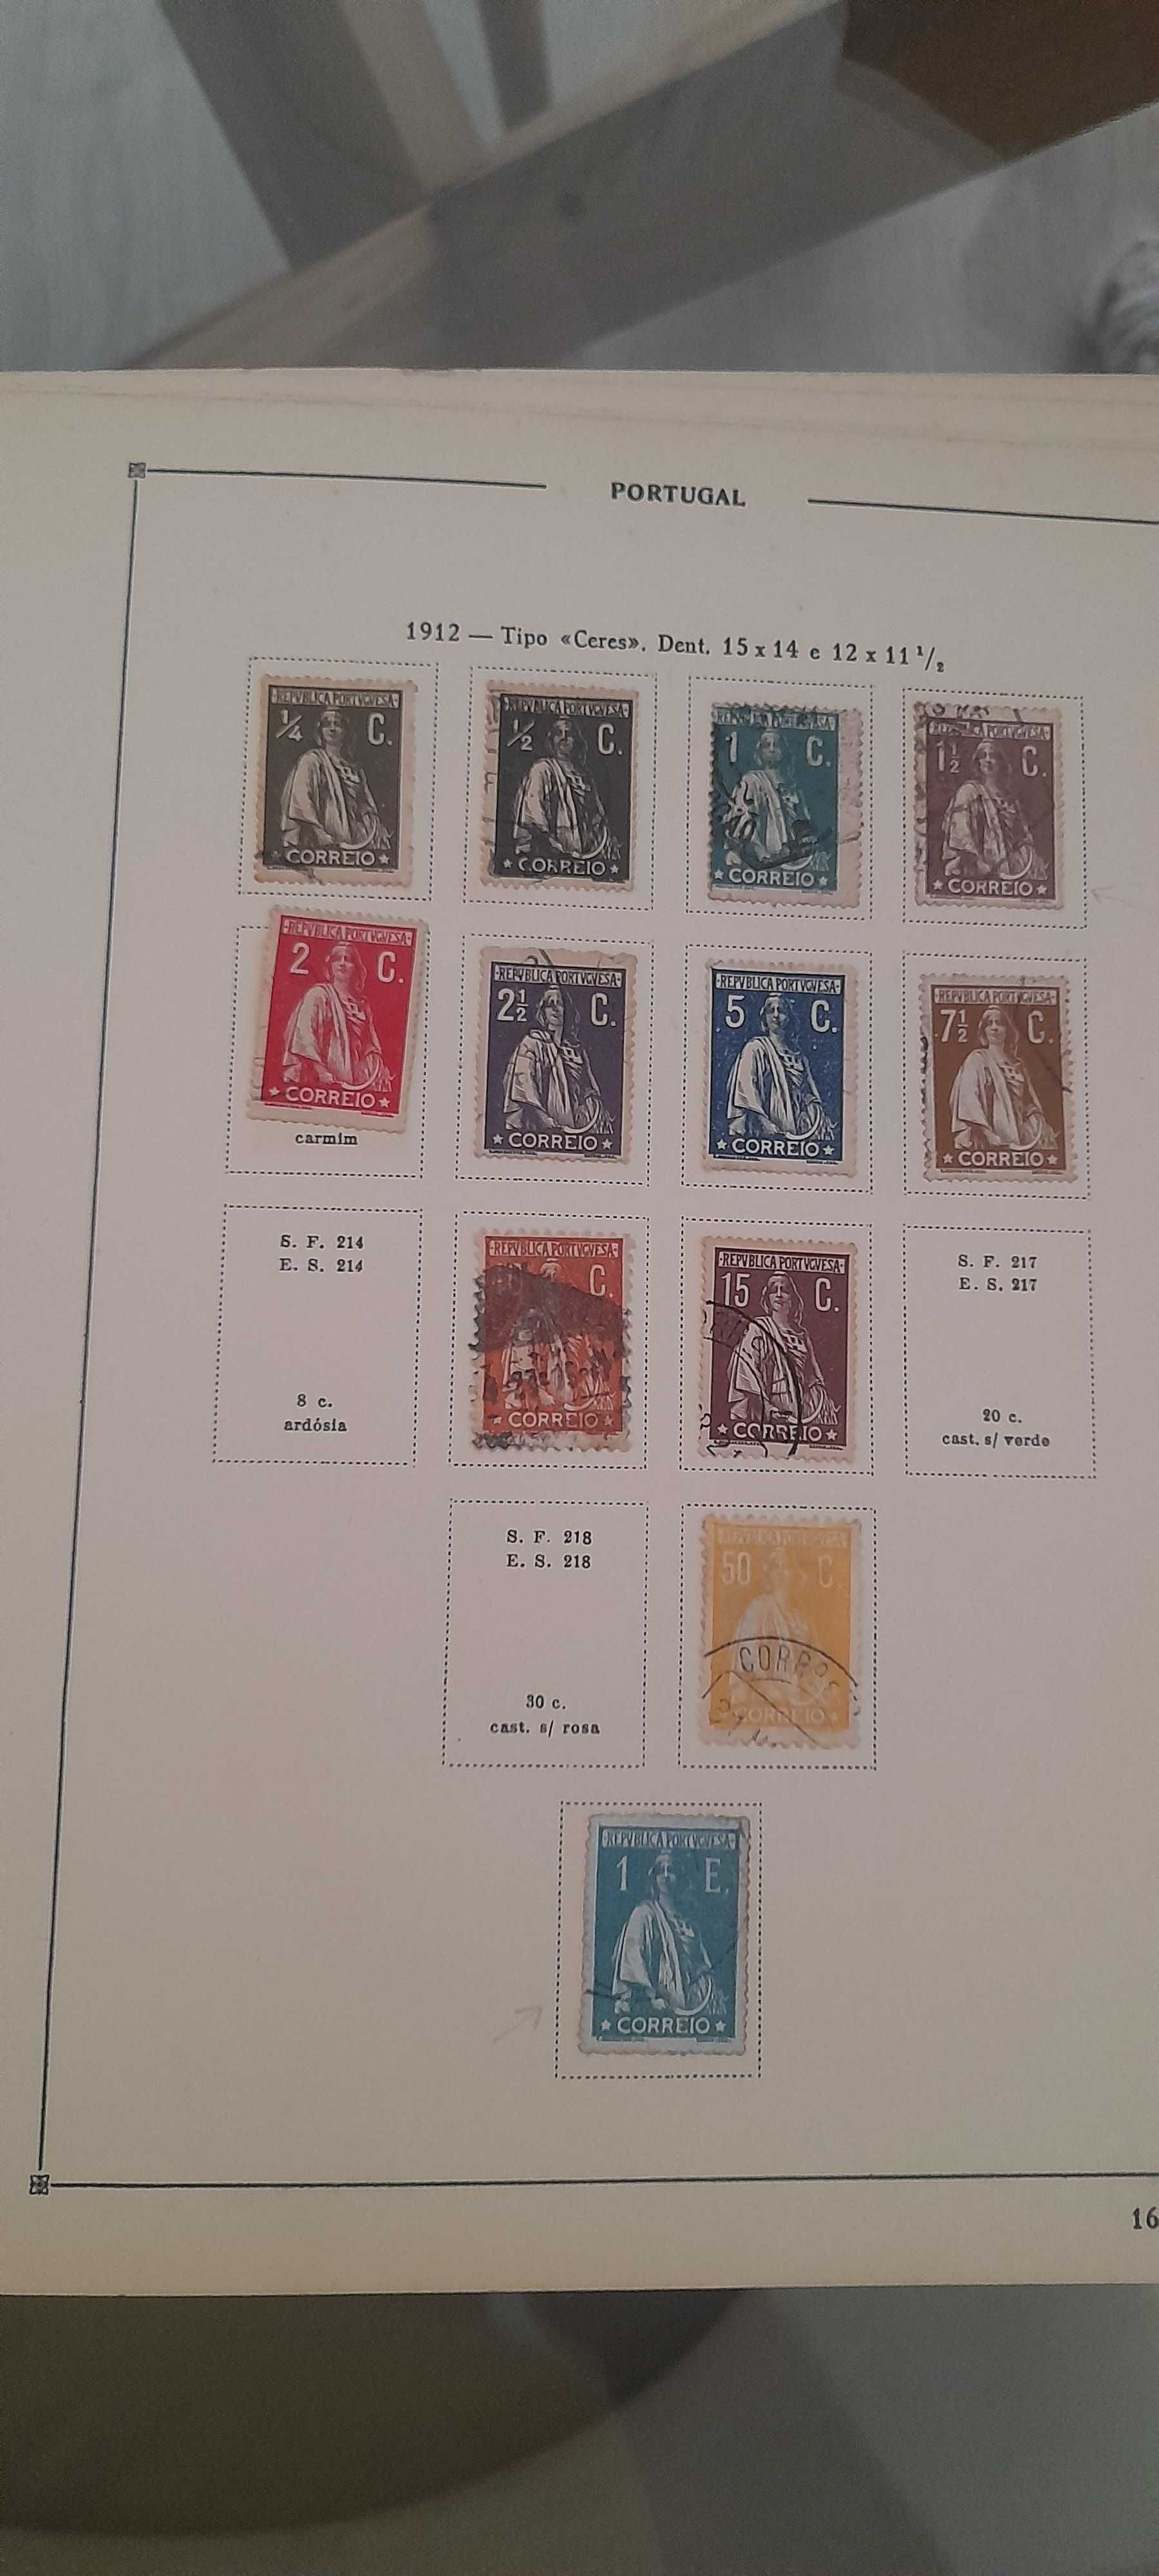 Coleção de selos portugueses antigos de 1853 a 1974